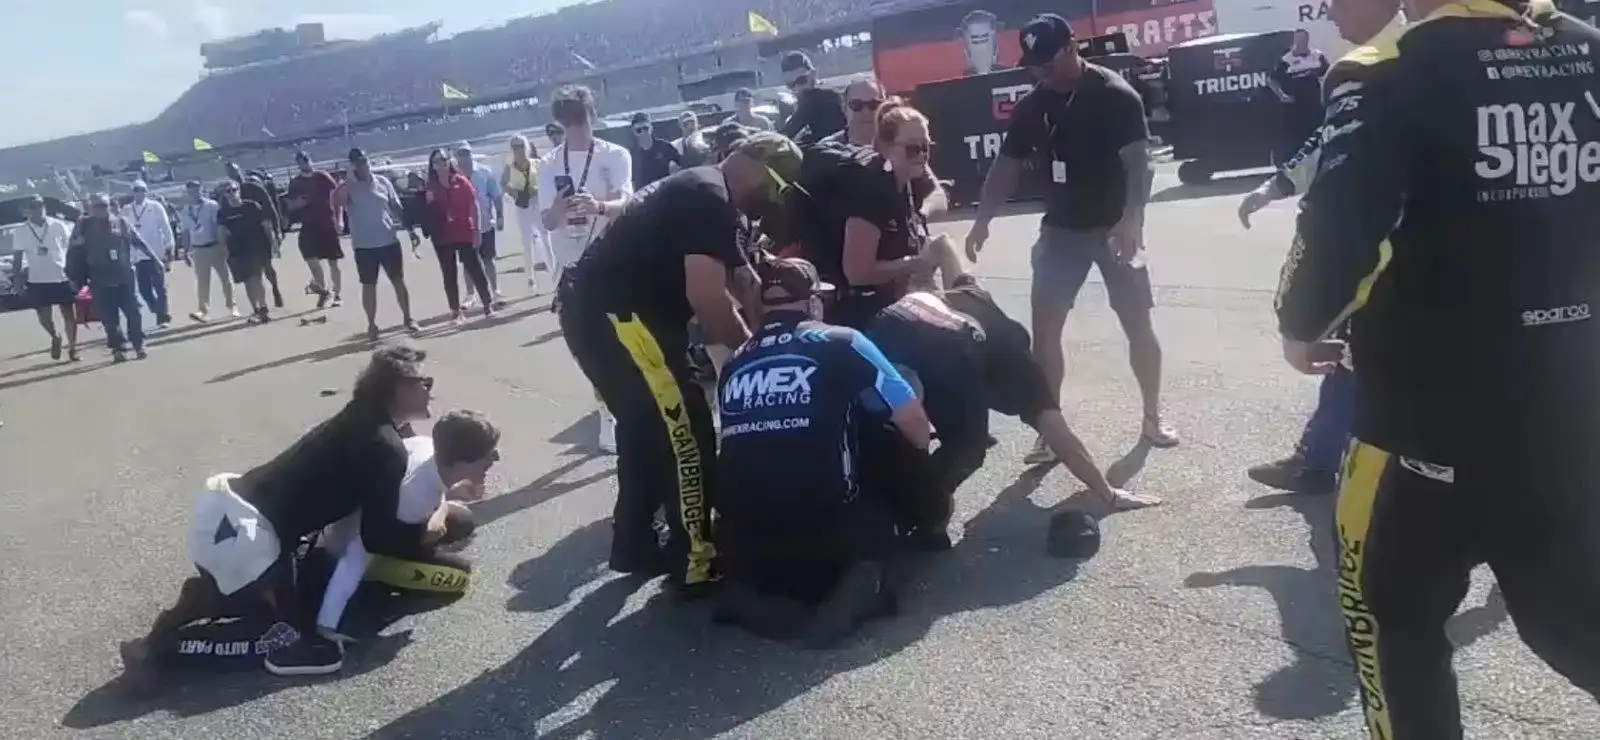 纳斯卡尼克·桑切斯和马特Crafton战斗pitlane after truck crash.